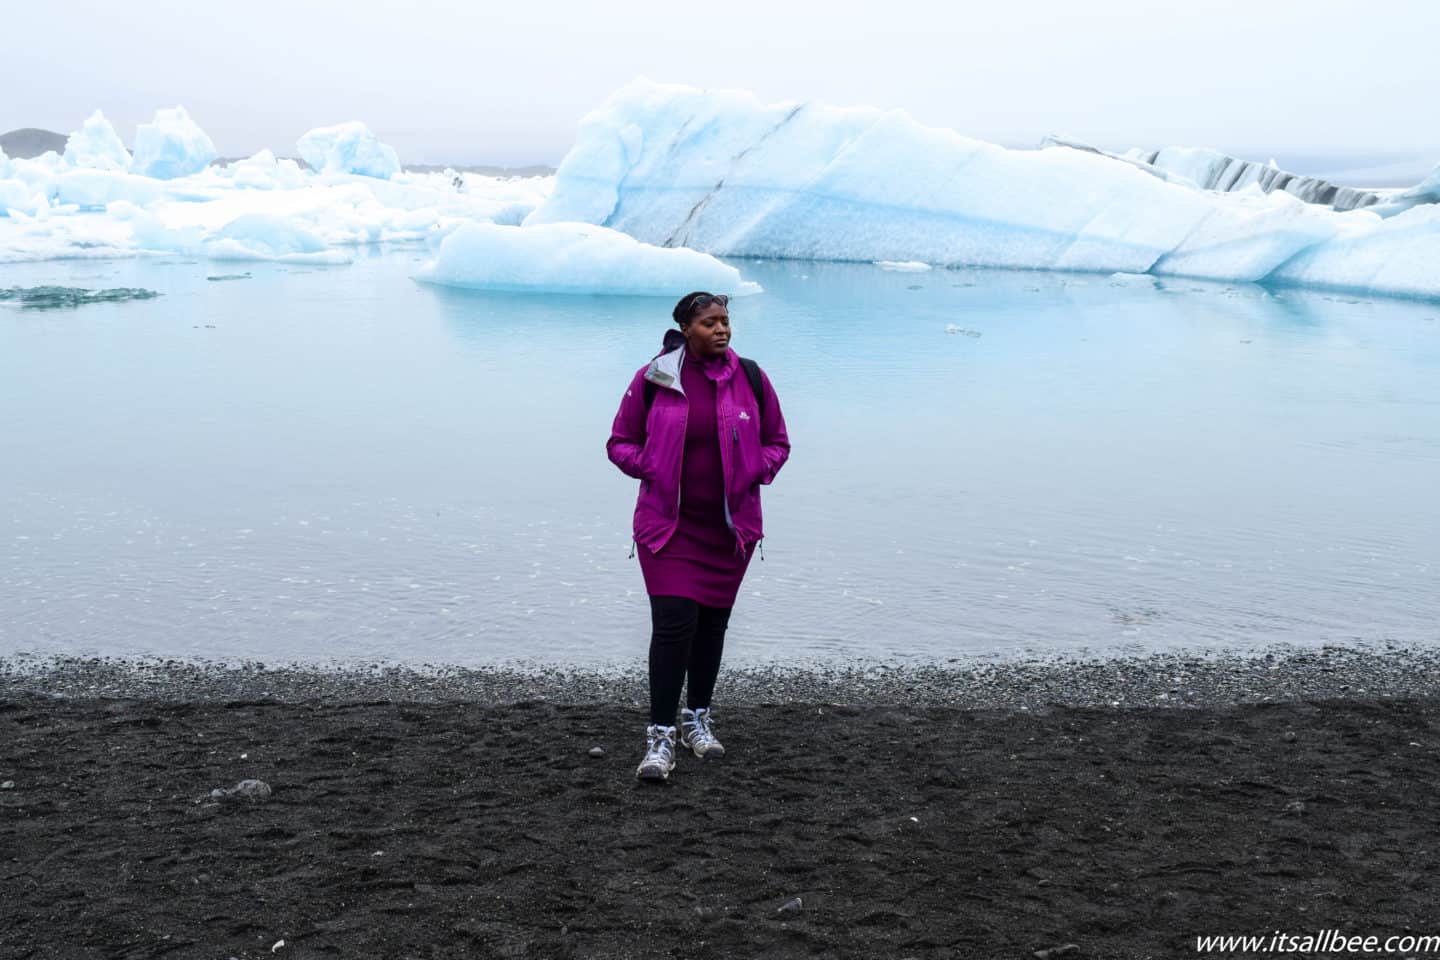 Ijsland Essentials - De Beste Wandelschoenen Voor IJsland - Tips voor de beste schoenen voor IJsland, goede laarzen voor ijsland in winter en zomer. Wandelschoenen, sneeuwlaarzen en meer. Alles wat je moet weten over schoenen om in te pakken voor IJsland voor verschillende activiteiten. #traveltips #itsallbee #trip #avontuur #winter #besttimetovisit www.itsallbee.com #europe #hiking #glacier #lagoon